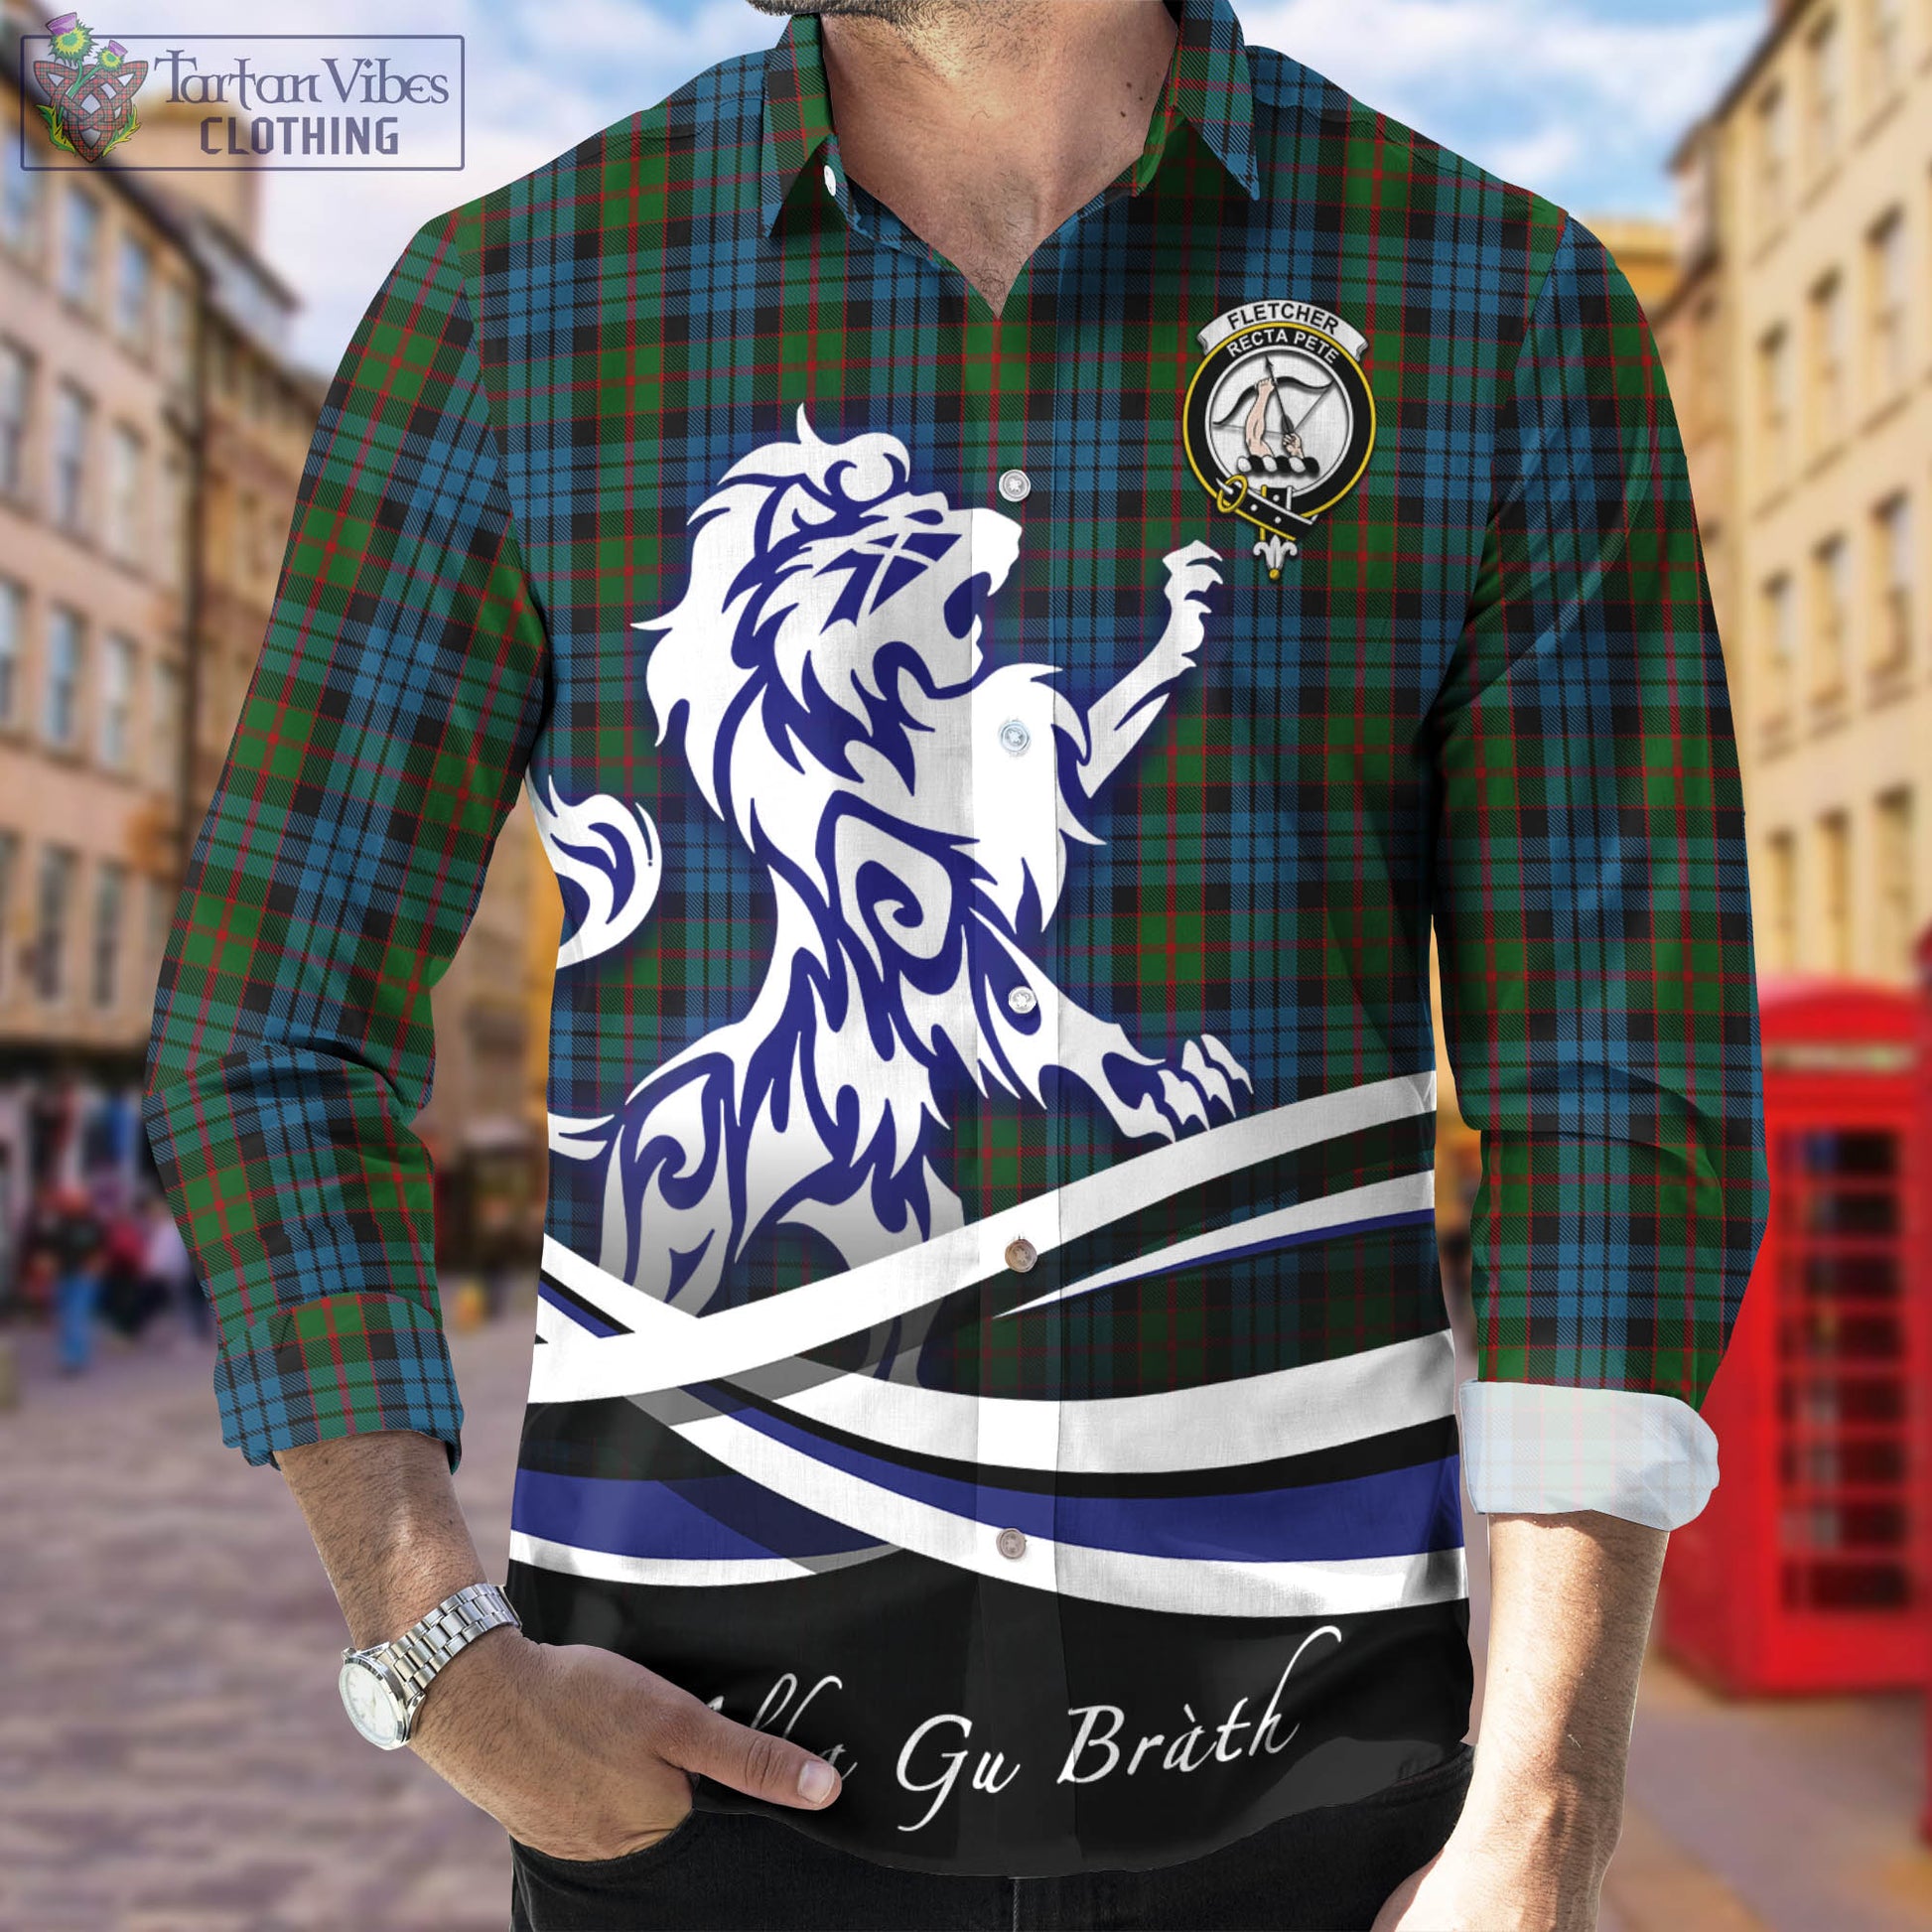 fletcher-of-dunans-tartan-long-sleeve-button-up-shirt-with-alba-gu-brath-regal-lion-emblem